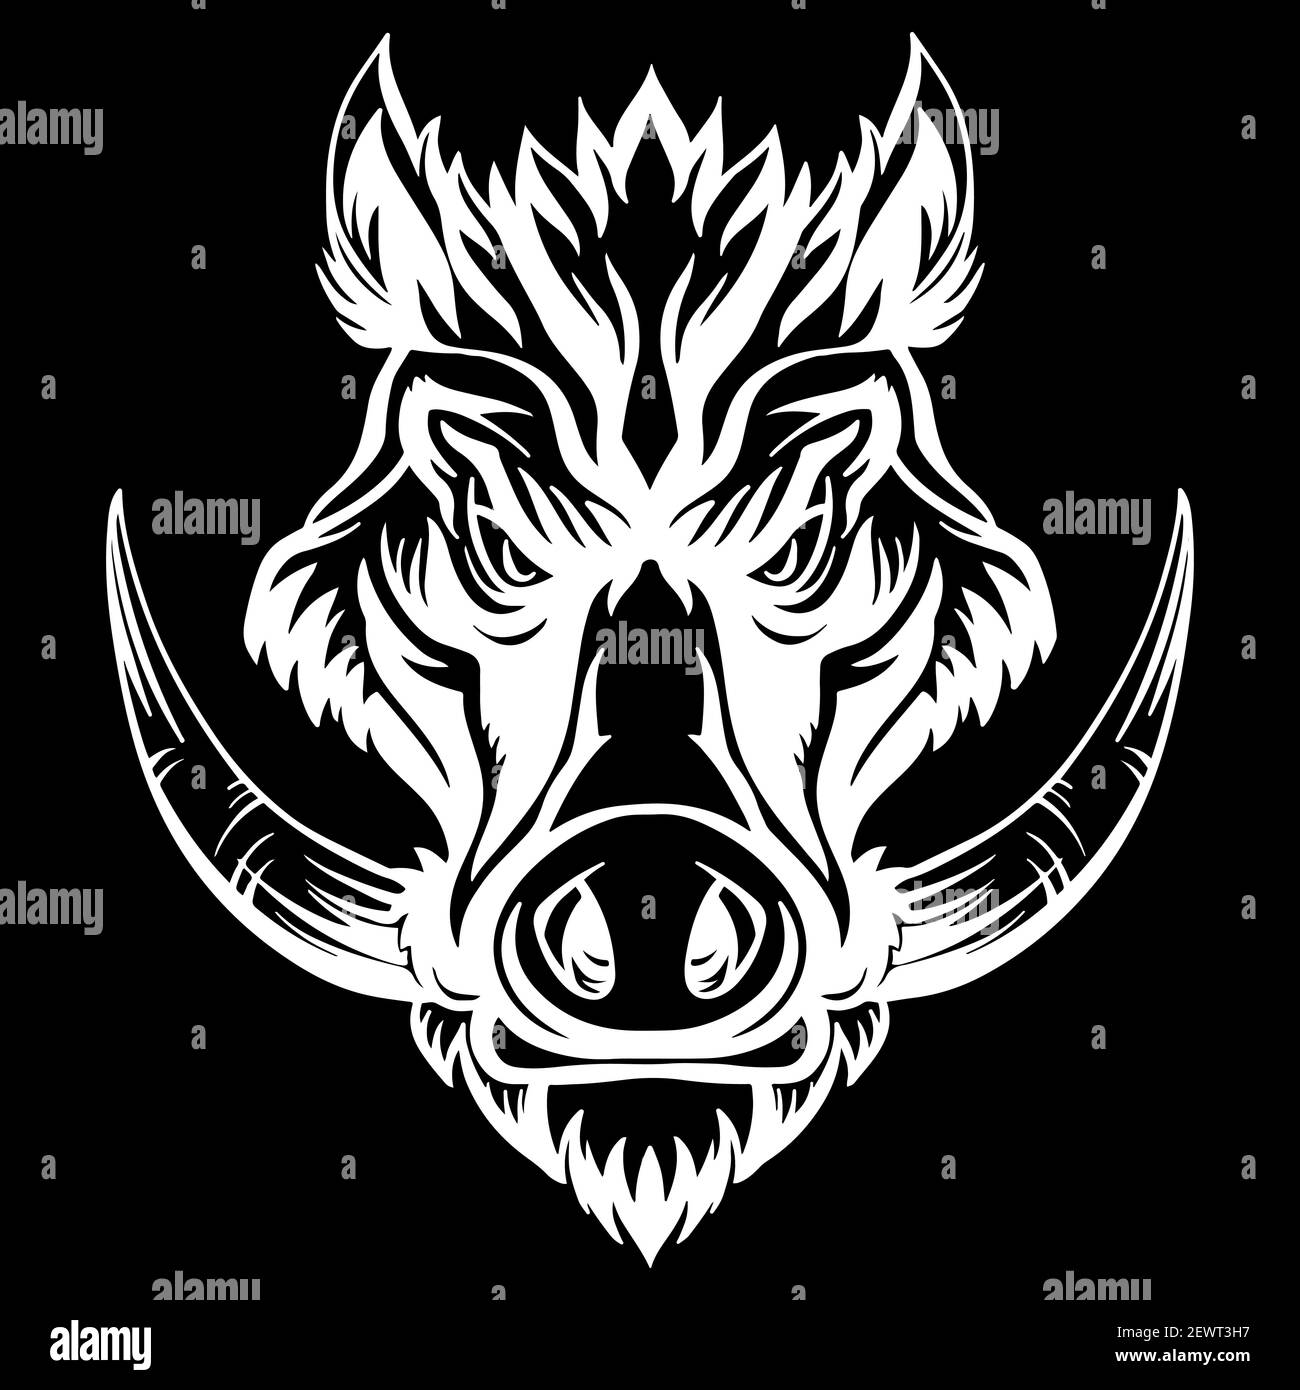 Mascotte. Testa vettoriale del cinghiale. Illustrazione bianca del maiale selvatico di pericolo isolato su sfondo nero. Per decorazione, stampa, disegno, logo, club sportivi, tat Illustrazione Vettoriale